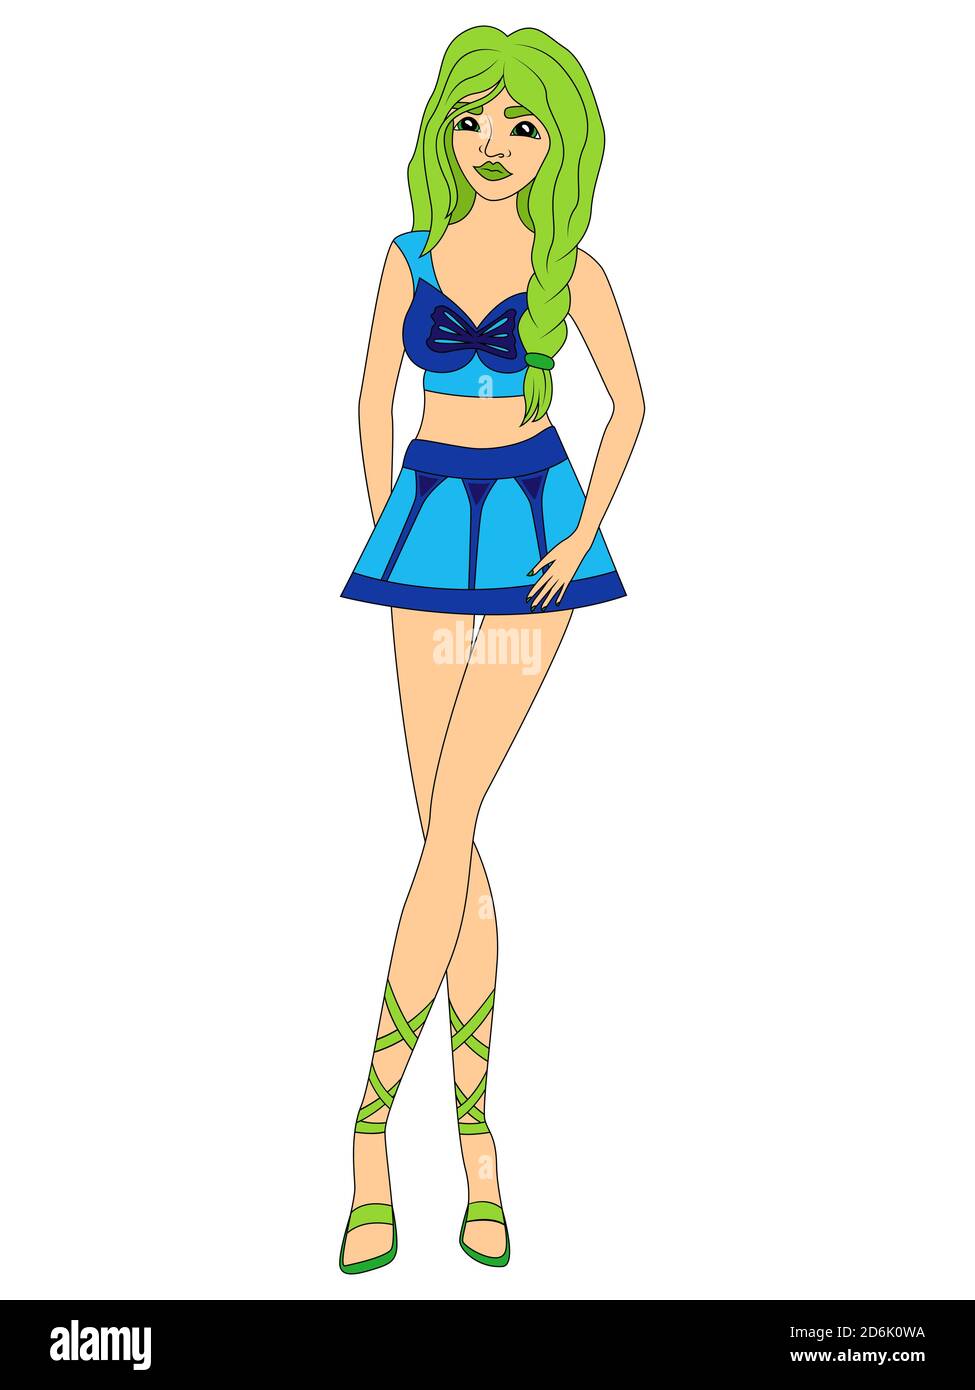 Liebenswert Cartoon Mädchen in blauen Kleidern und mit grünem Haar, Vektor als Kinderzeichnung gemacht Stock Vektor